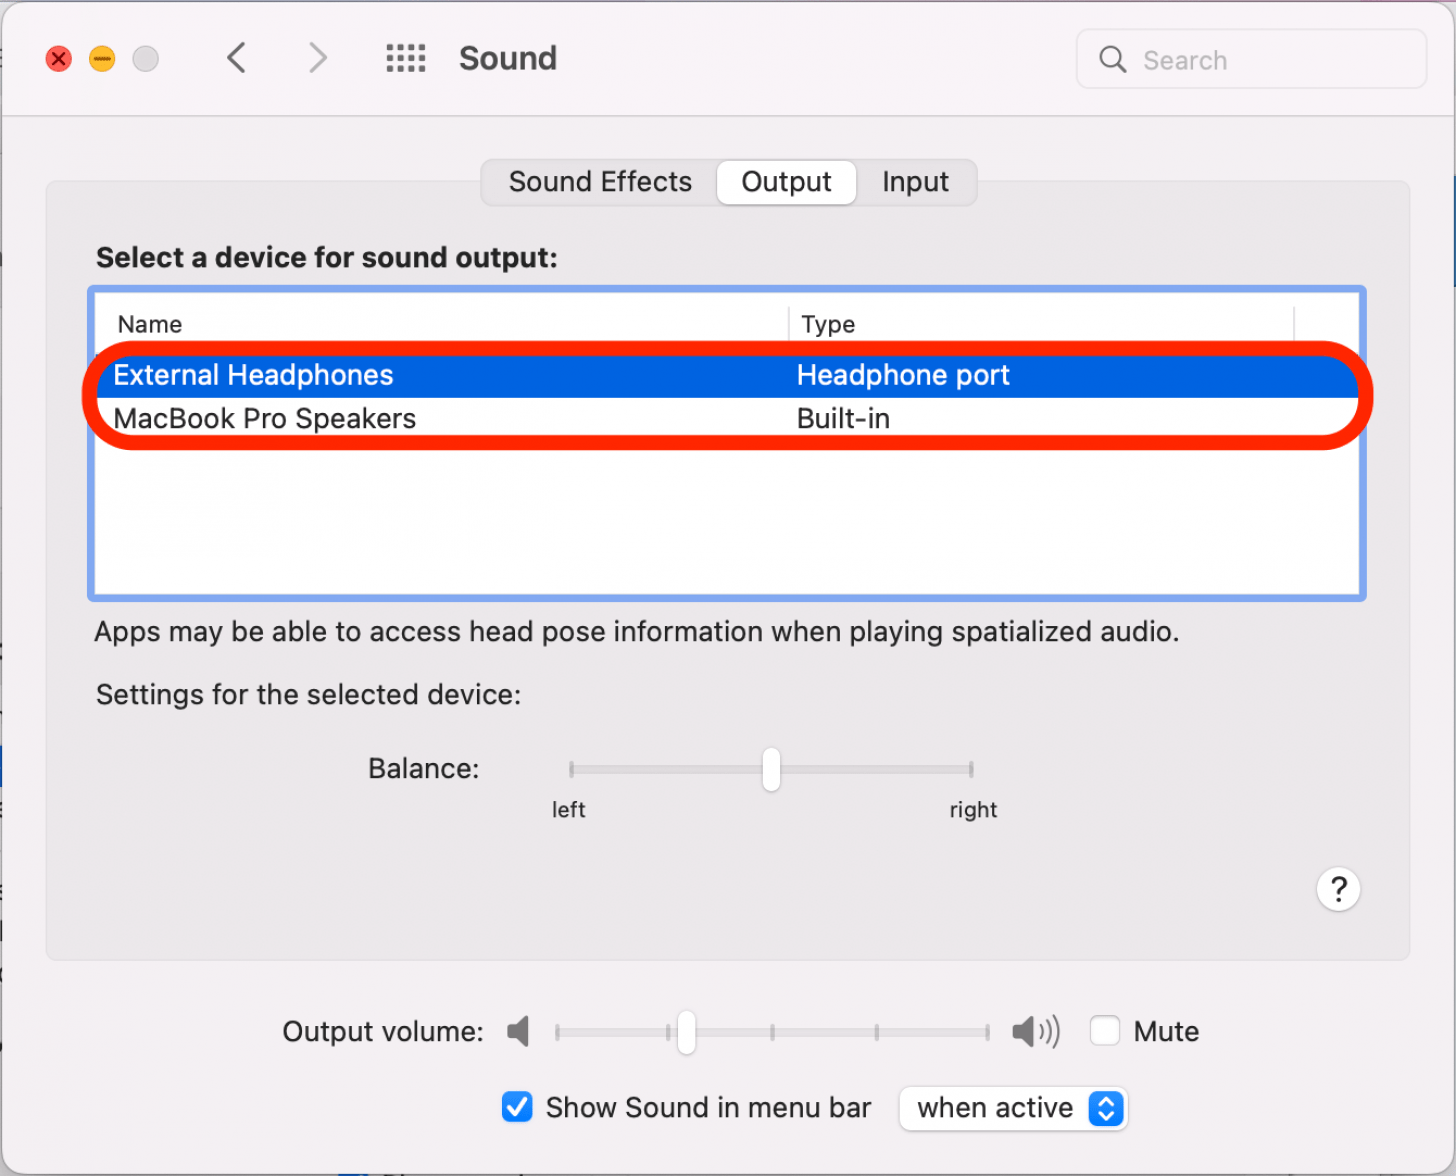 Cliquez pour sélectionner un périphérique pour la sortie audio.  Les options listeront tous les appareils actuellement disponibles.  Celui qui est en surbrillance est actuellement sélectionné.